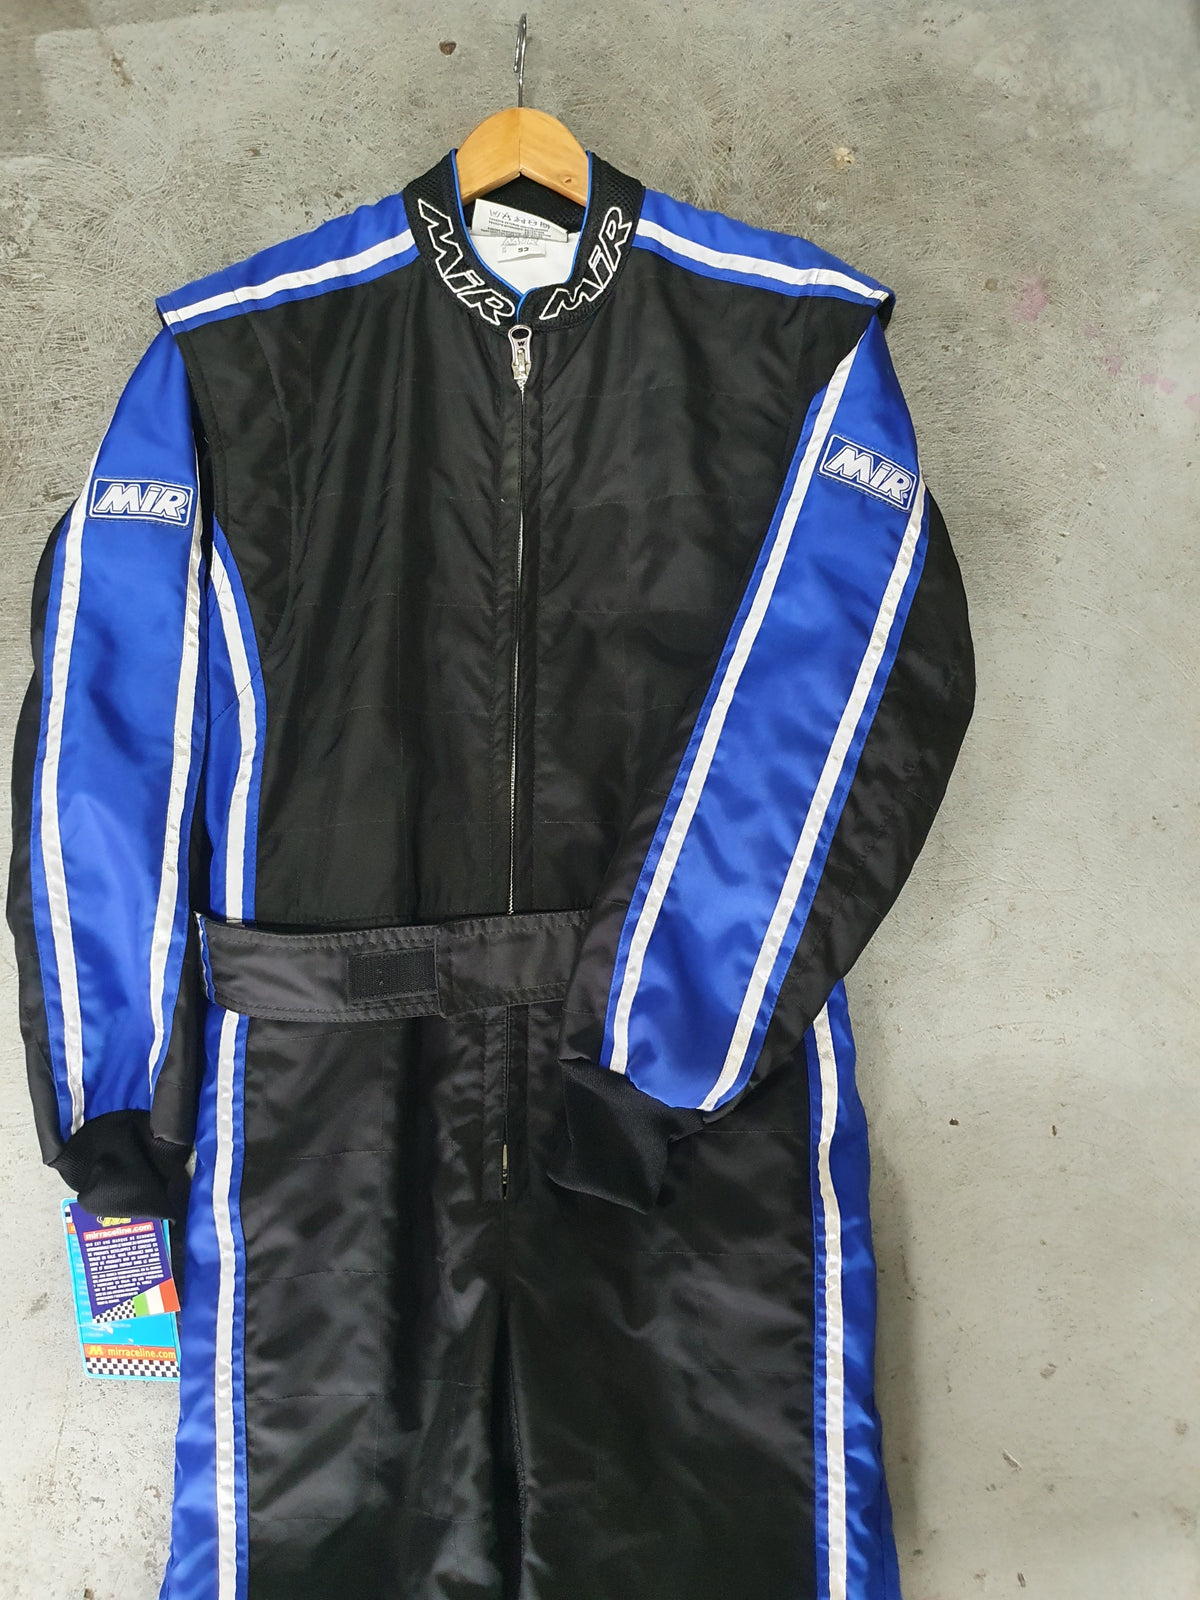 MIR - race suit blue - Project X Racing Pty Ltd